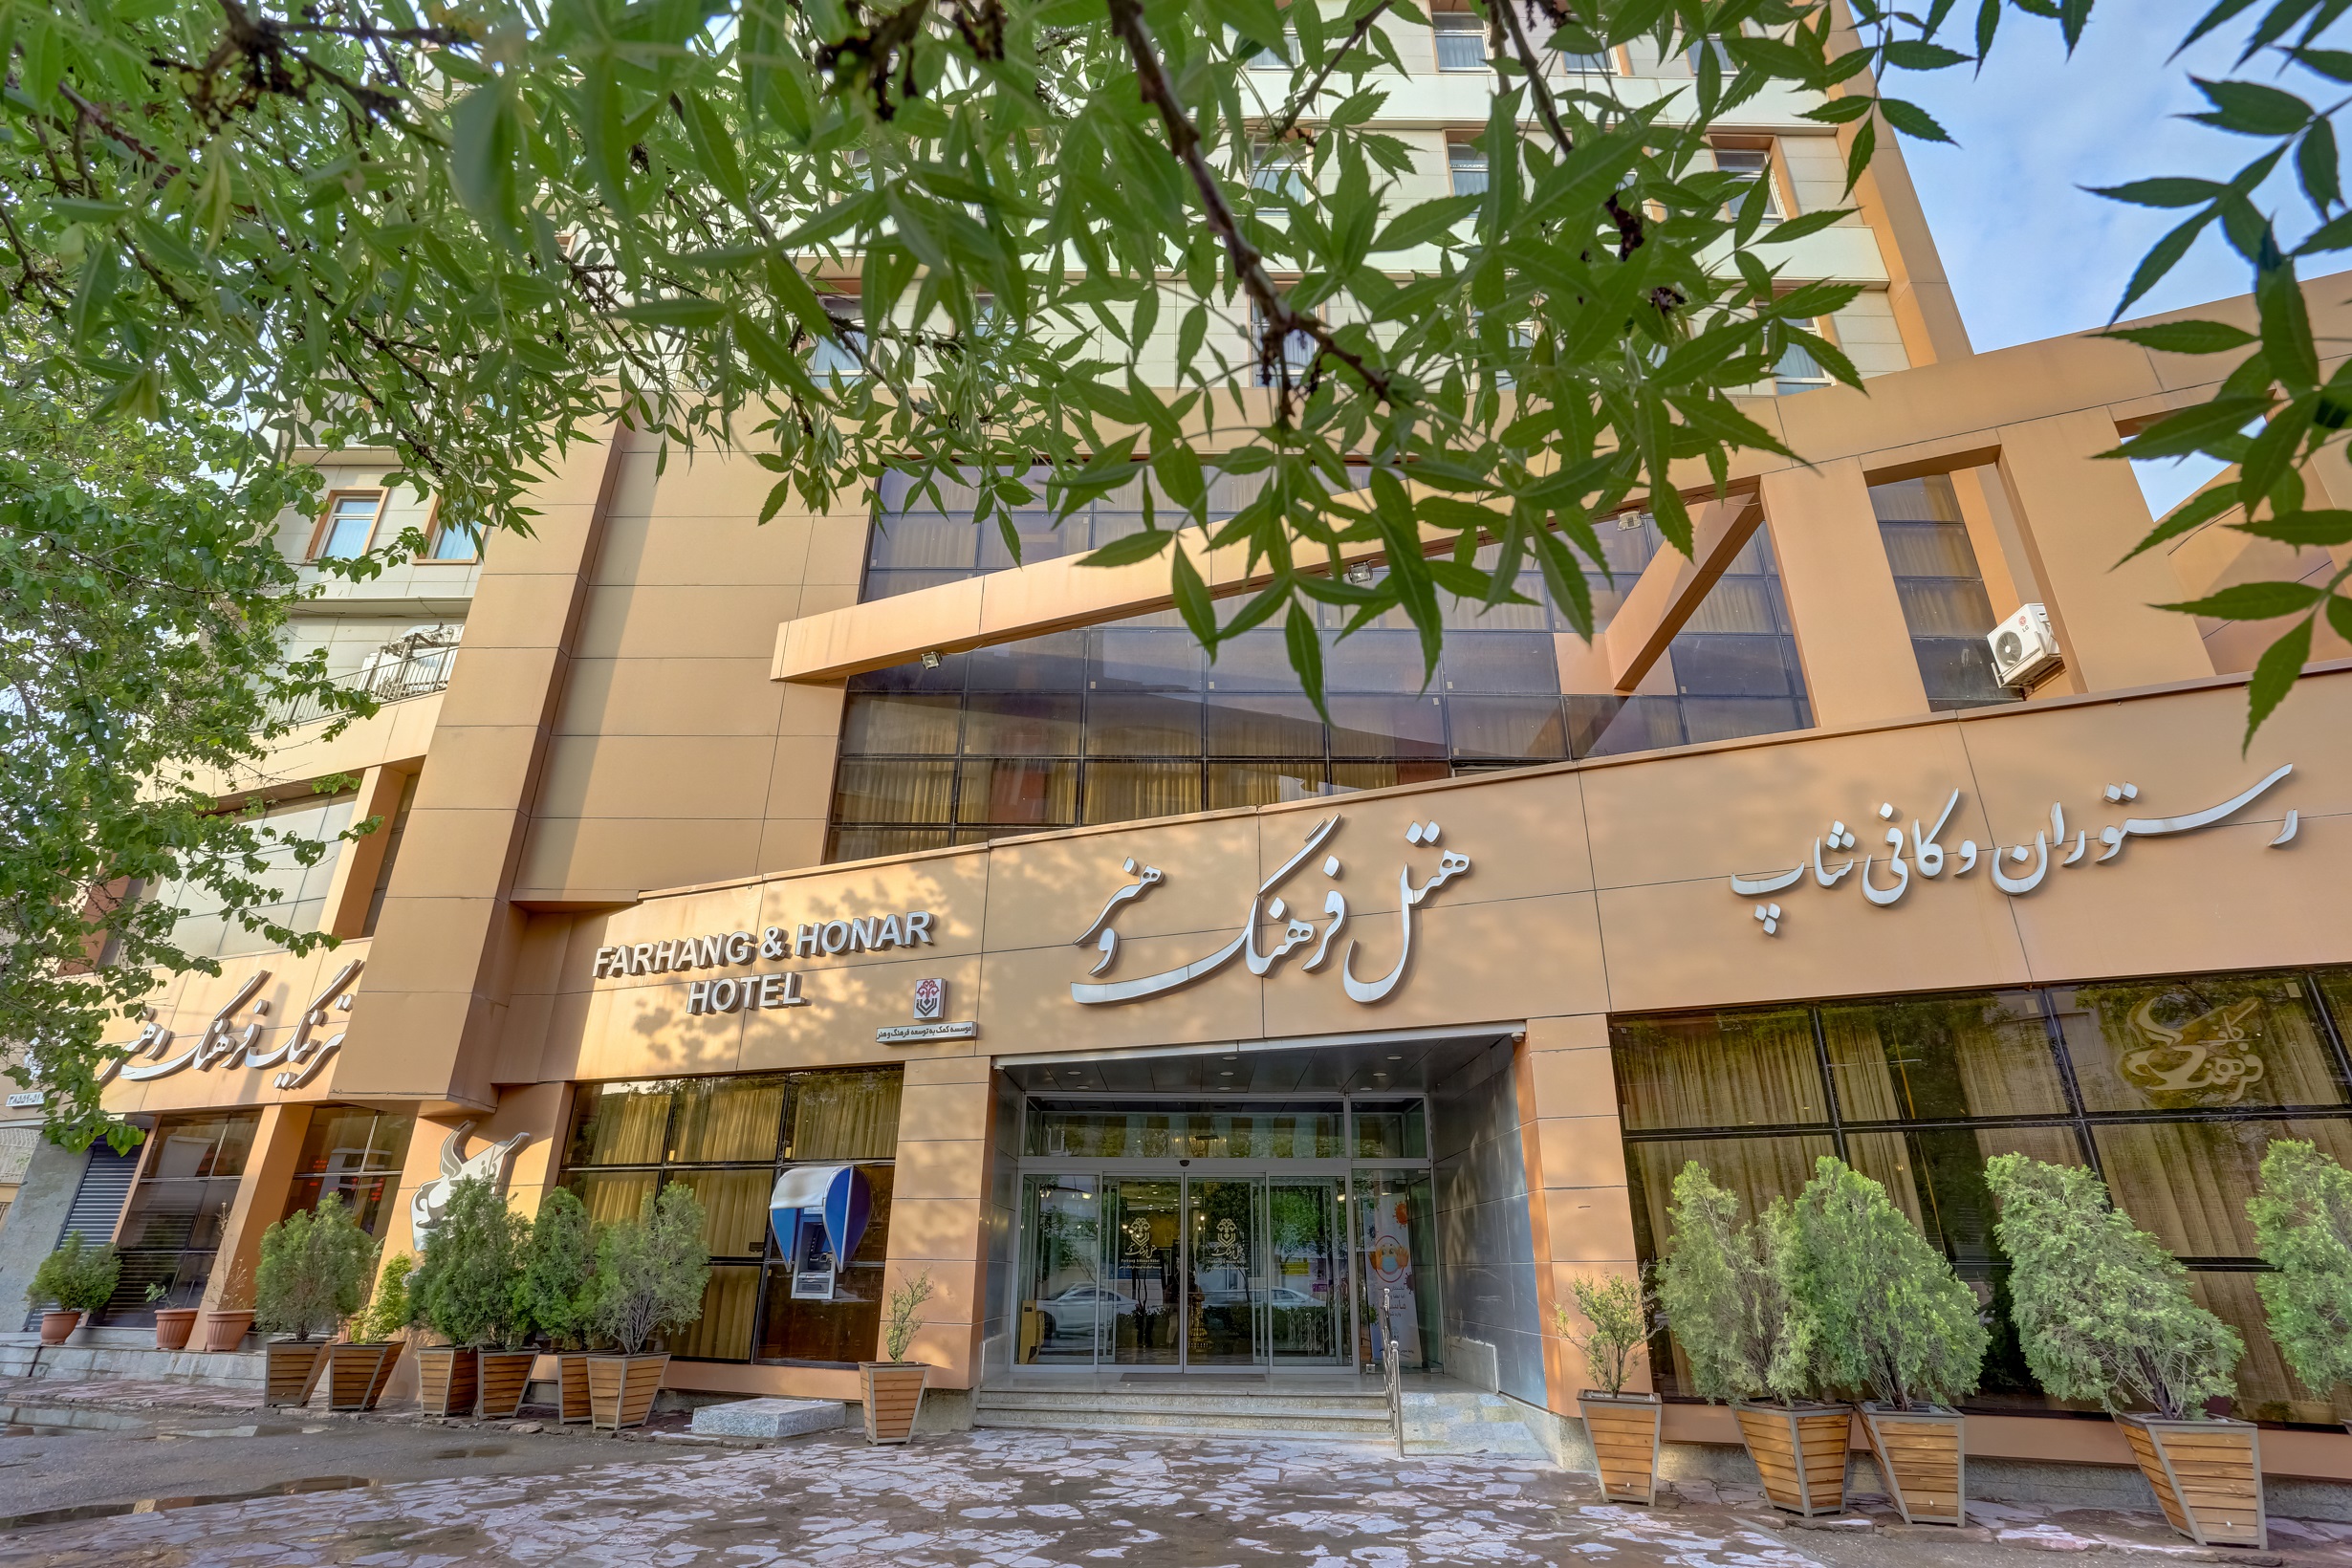 هتل فرهنگ و هنر ، مشهد